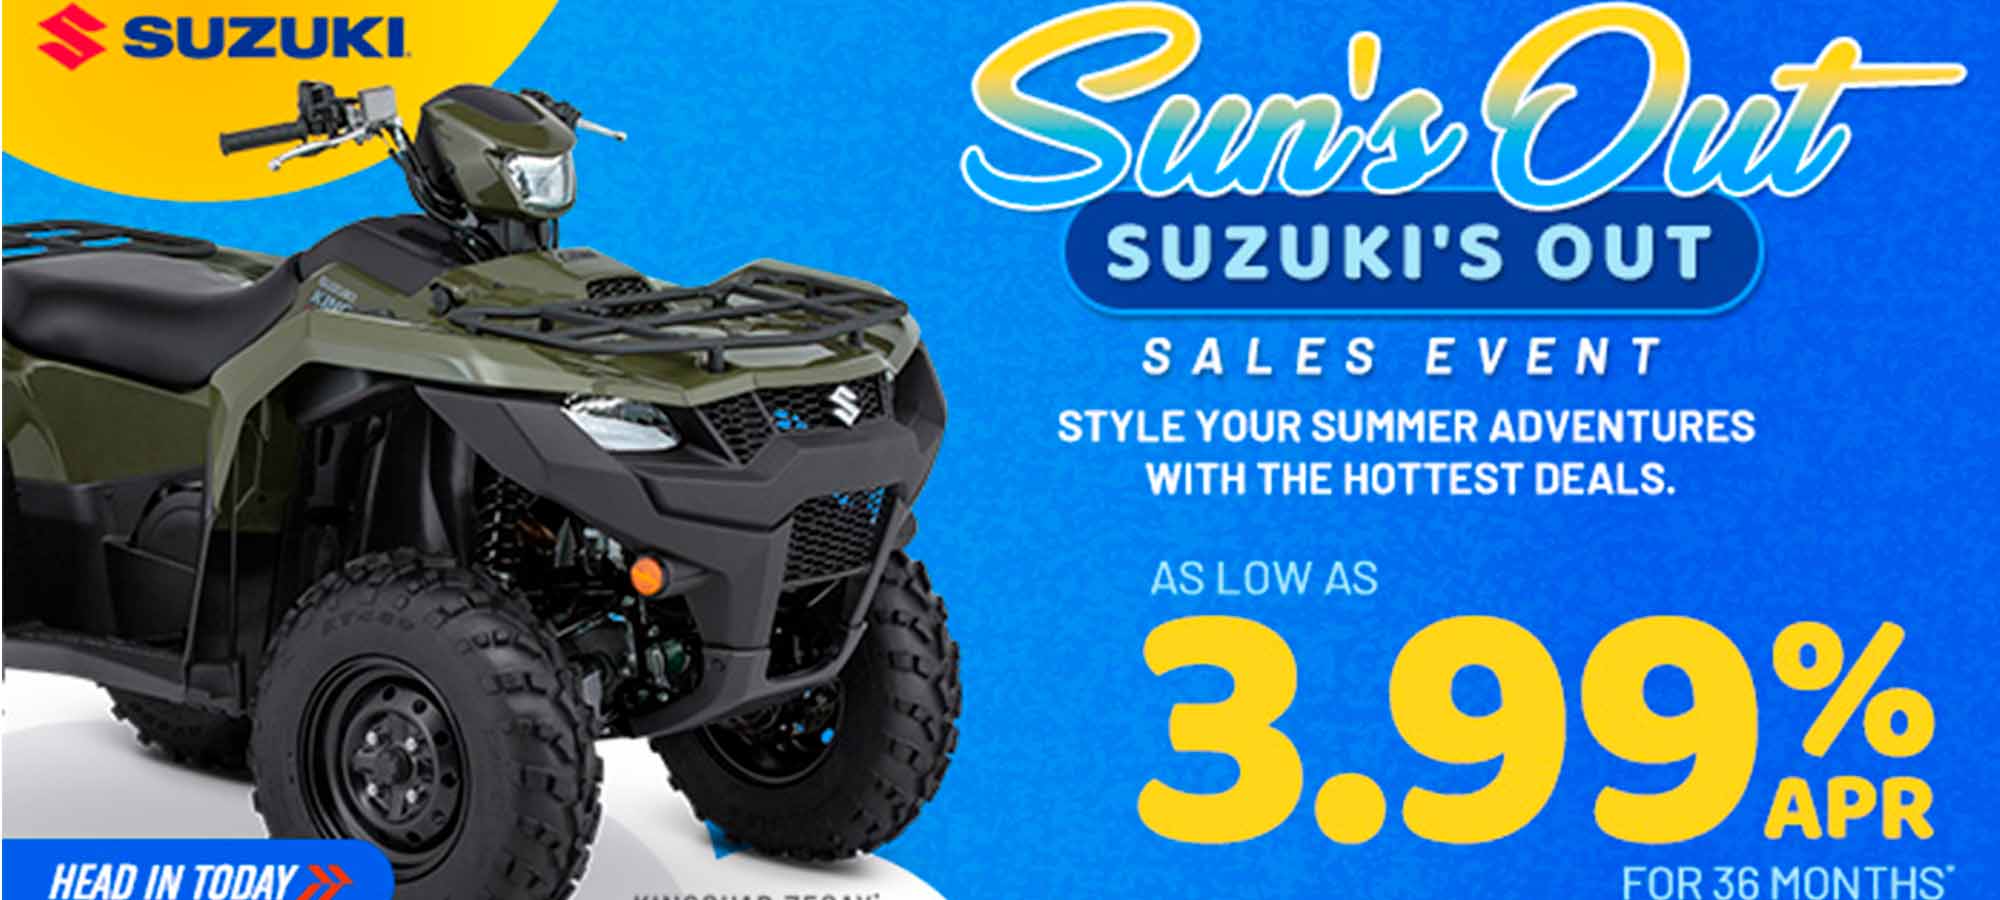 Suzuki US - Sun's Out Suzuki's Out Sales Event at Sloans Motorcycle ATV, Murfreesboro, TN, 37129